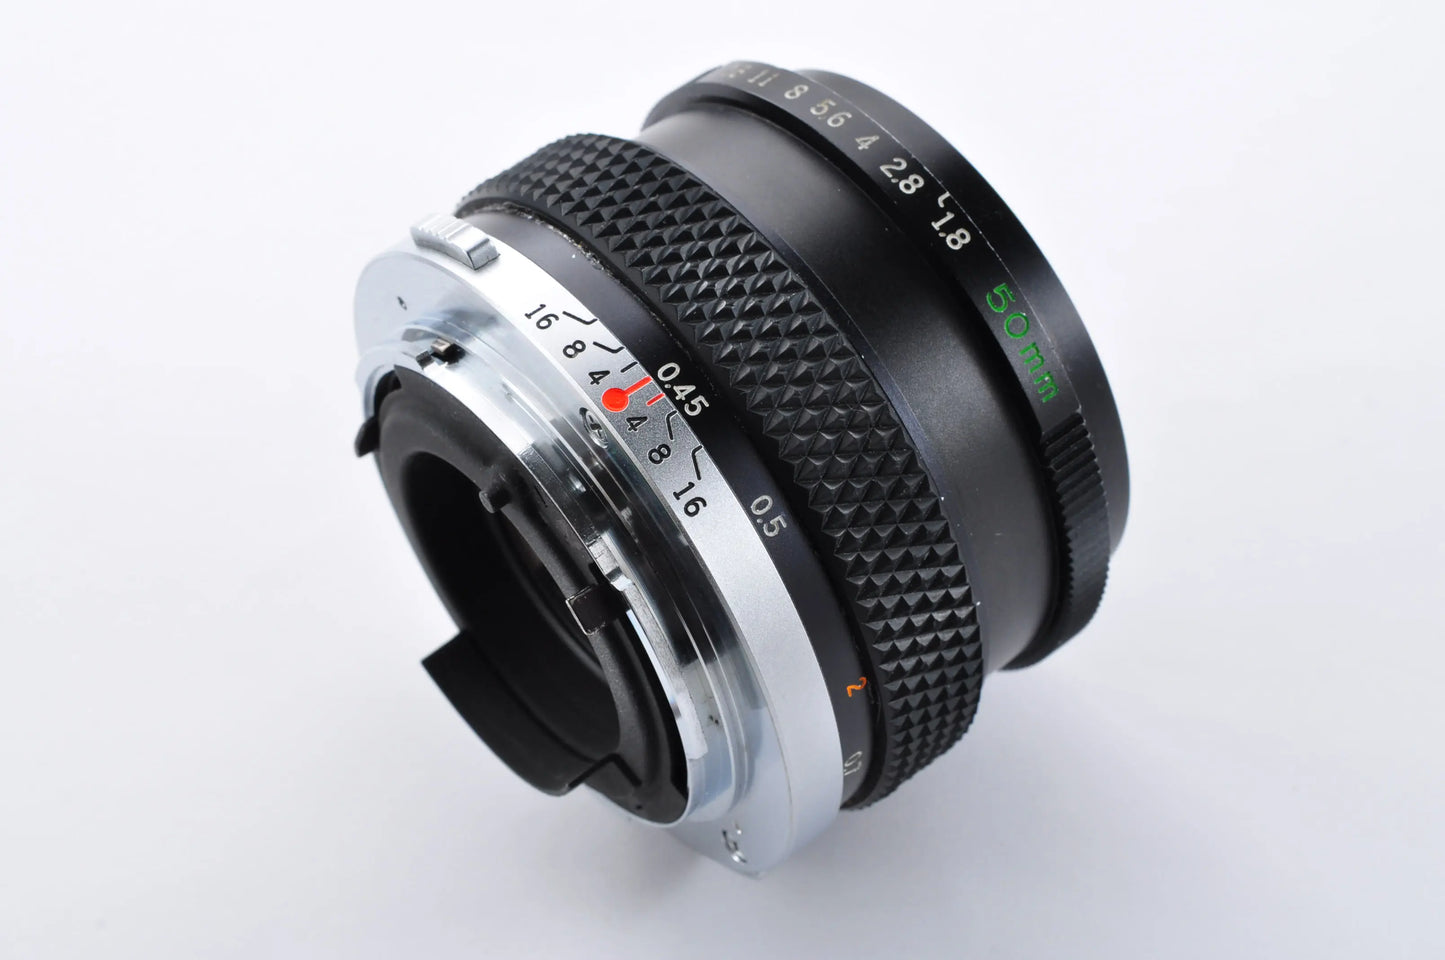 Olympus OM-1 Black 35mm SLR Film Camera F.ZUIKO AUTO-S 50mm F1.8 Near mint From Japan #804370